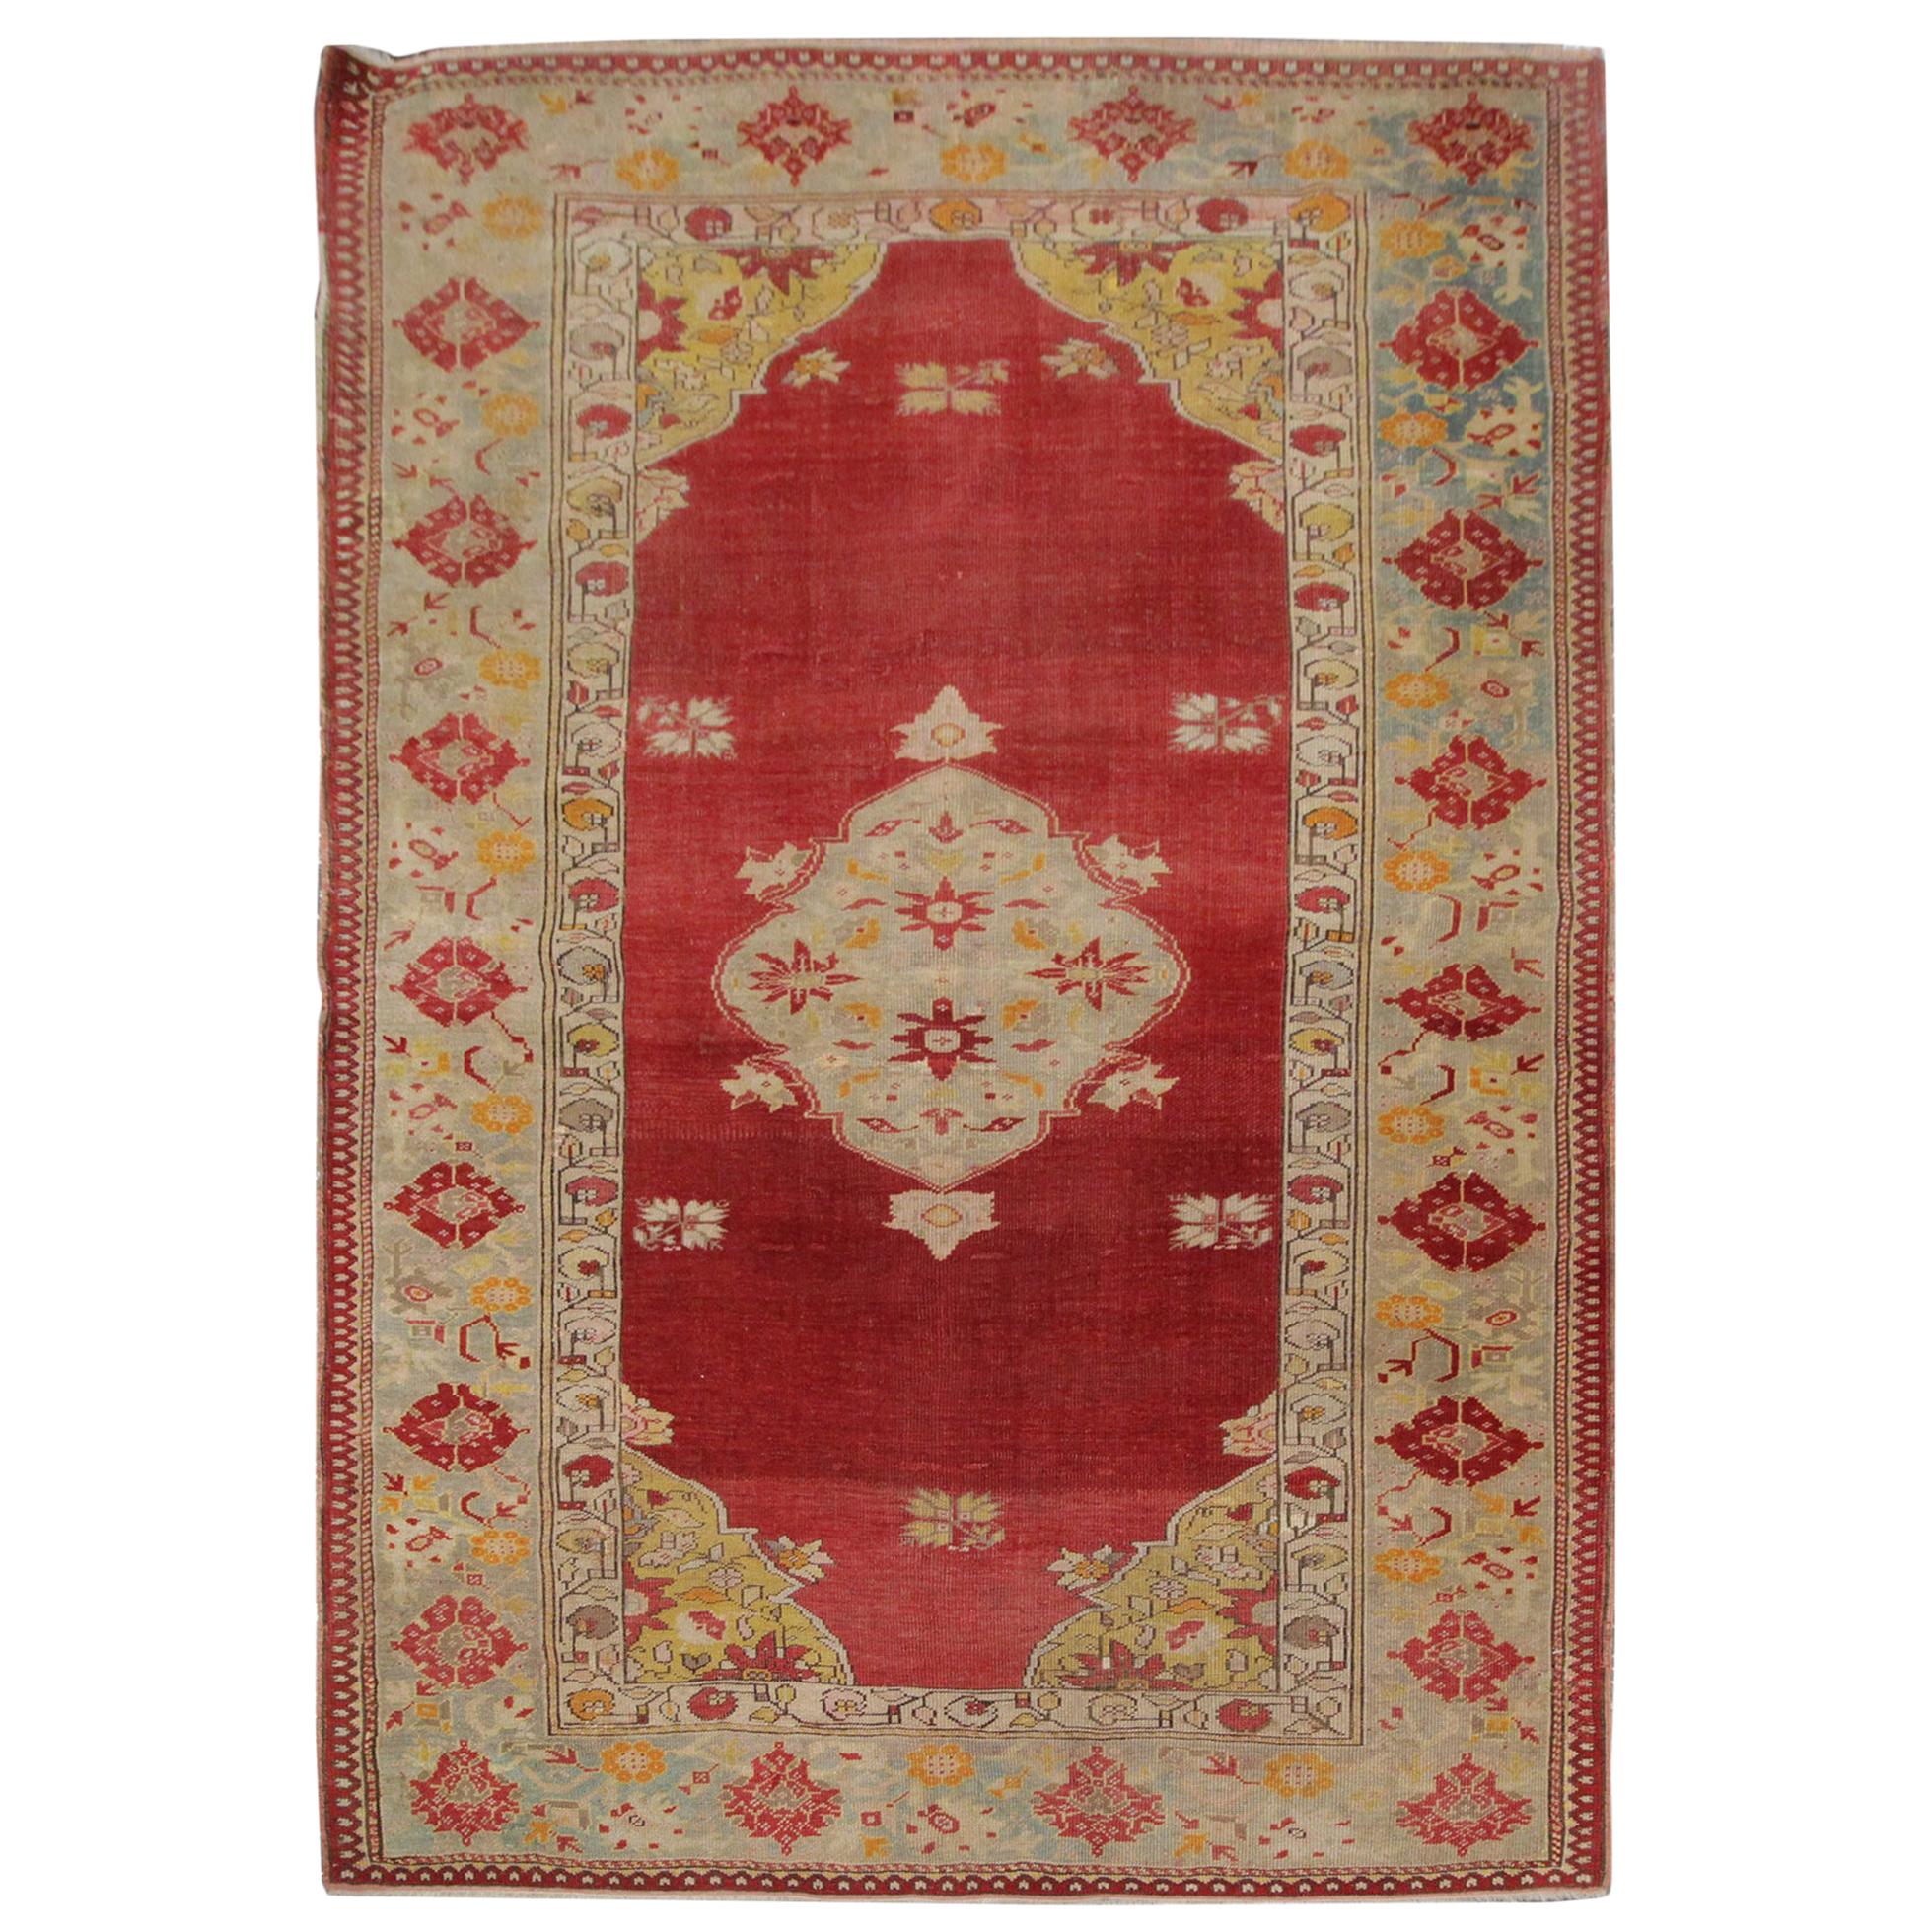 Roter antiker türkischer Borlou-Teppich, handgewebter Teppich, orientalischer Wollteppich